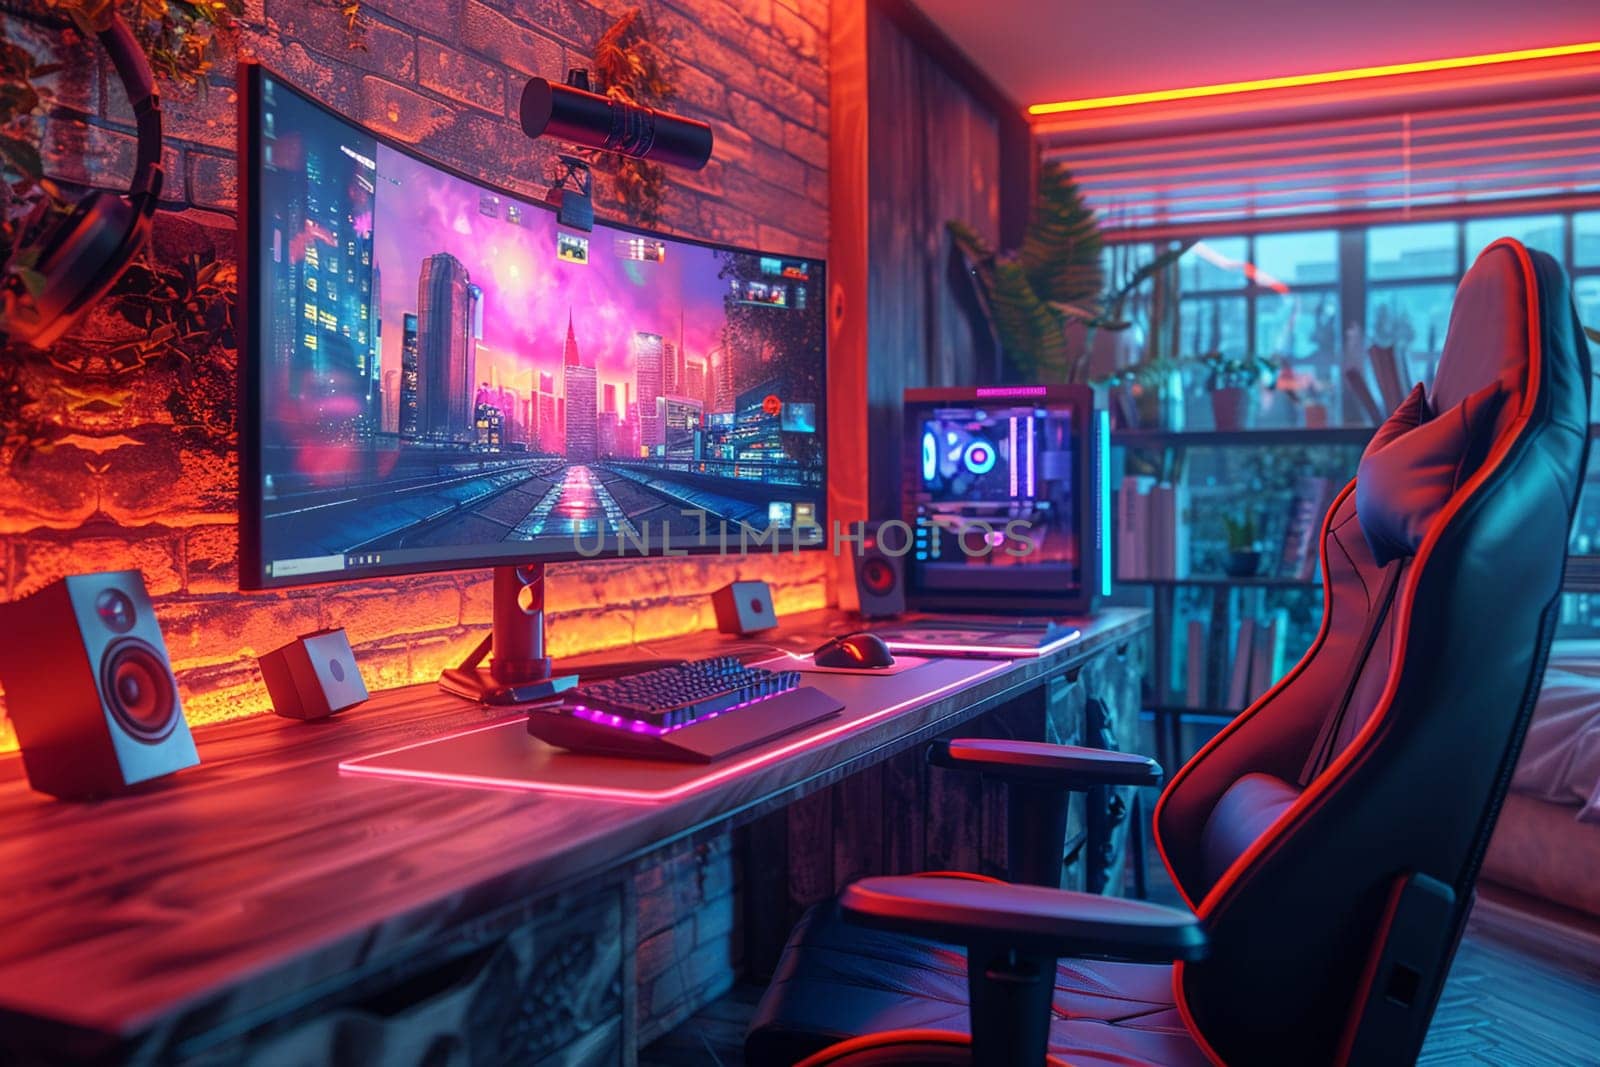 Cyberpunk gaming den with neon lights and high-tech setups3D render.